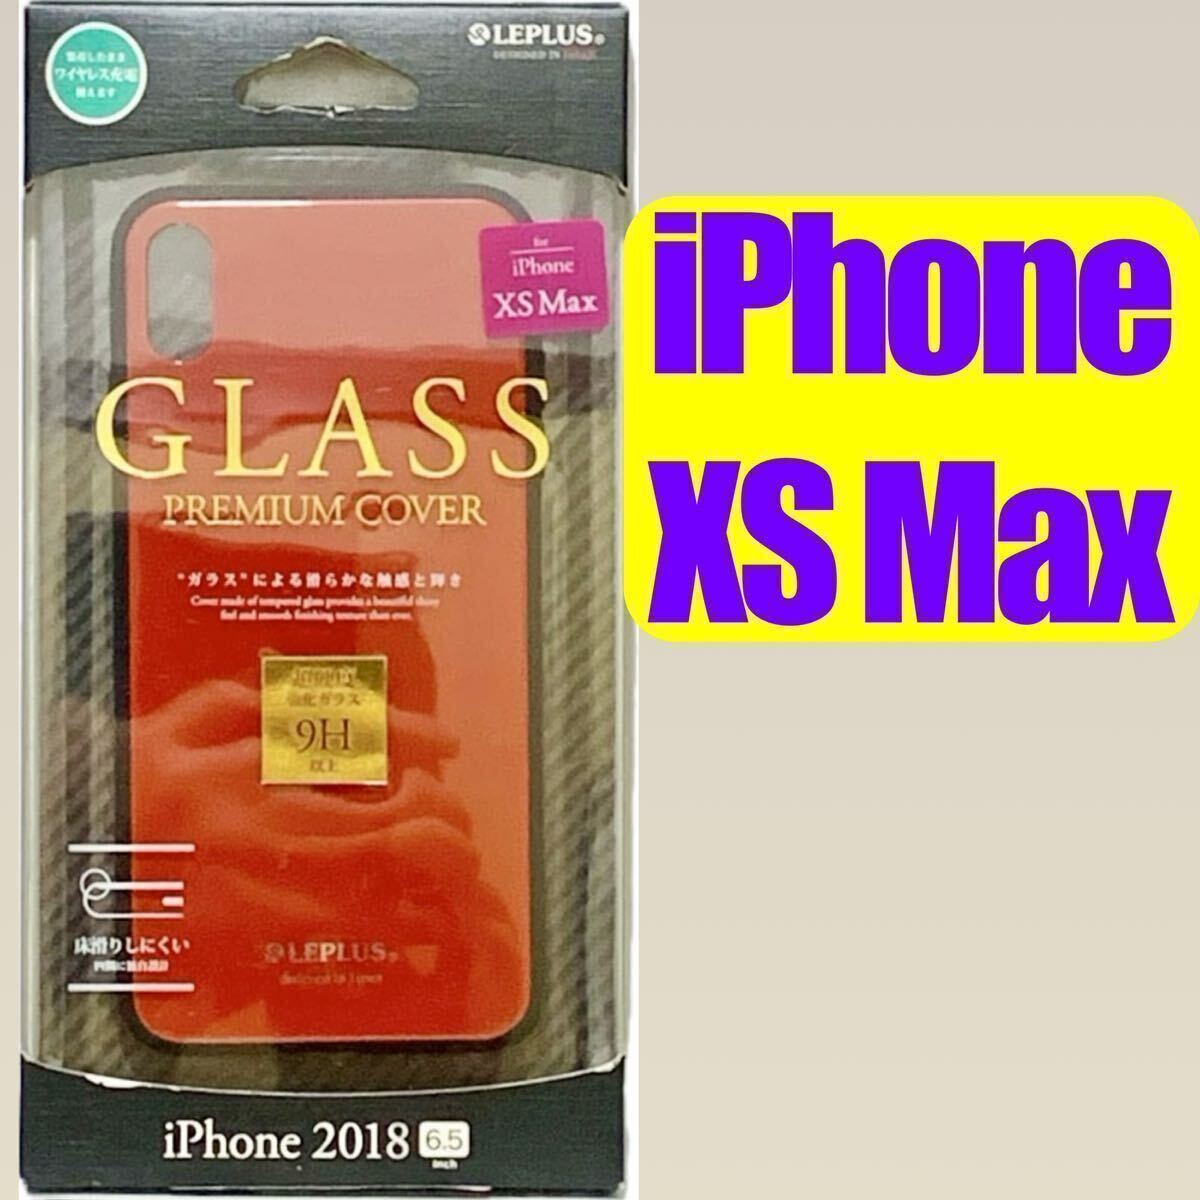 iPhone XS Max用 レッド 背面ガラスシェルケース a2 SHELL GLASS LP-IPLGSRD MSソリューションズ ルプラス _画像2